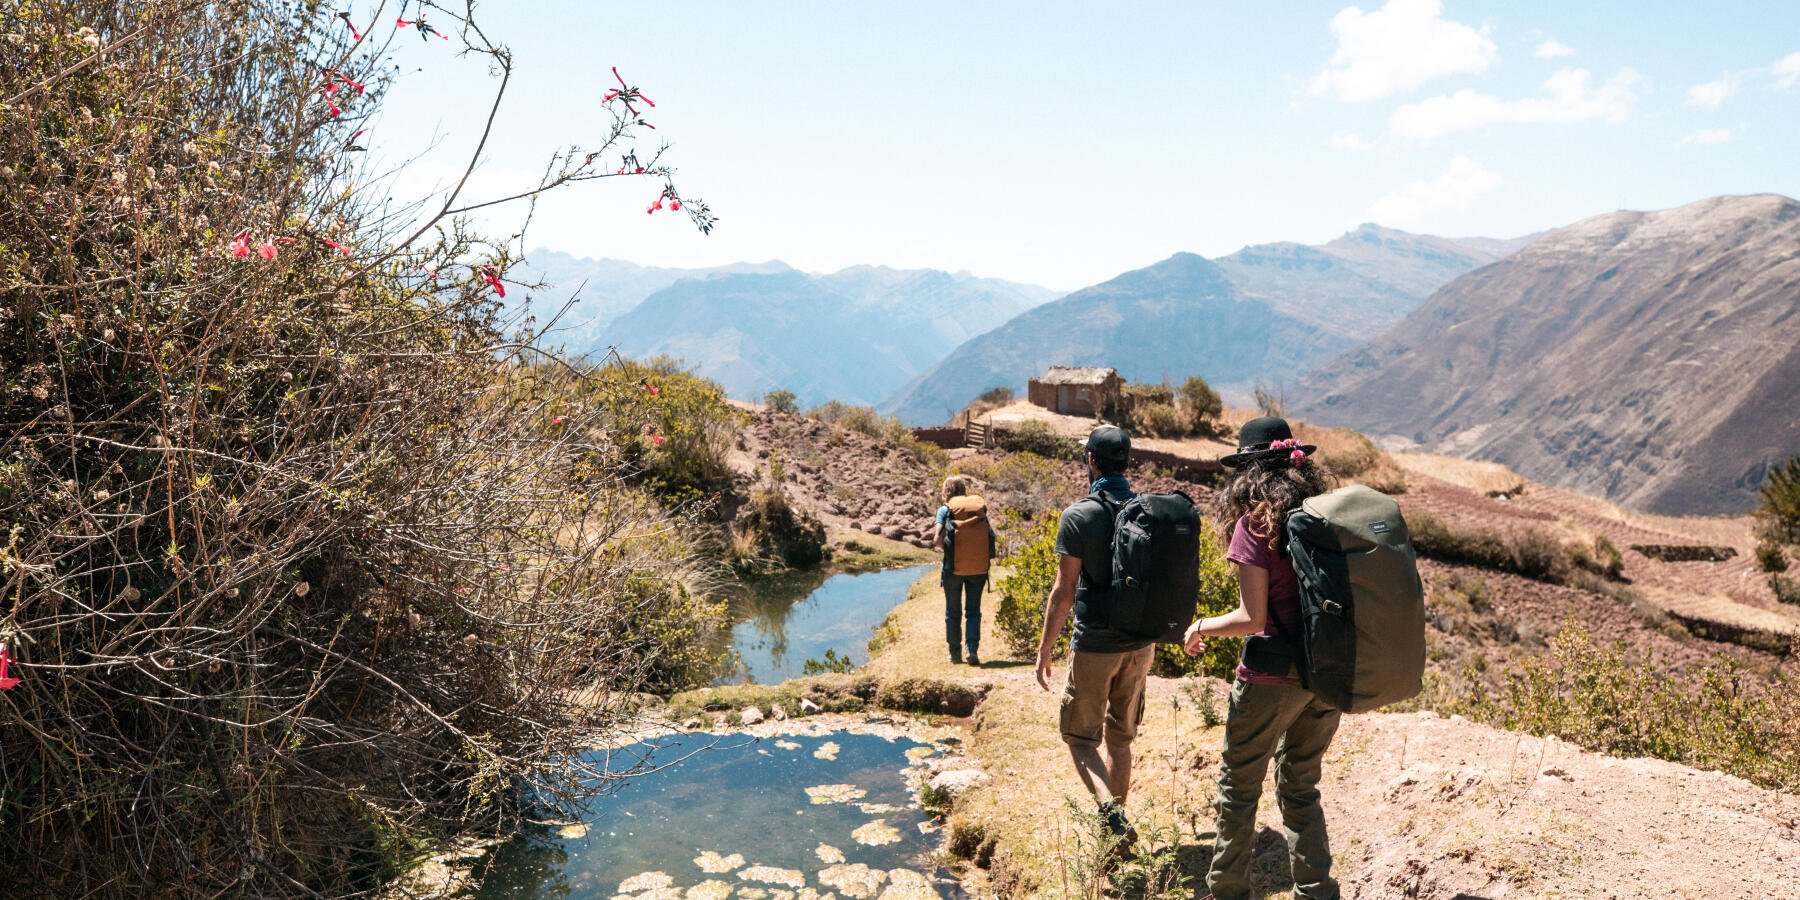 groupe d'amis qui marche dans un paysage montagneux, au bord d'un ruisseau